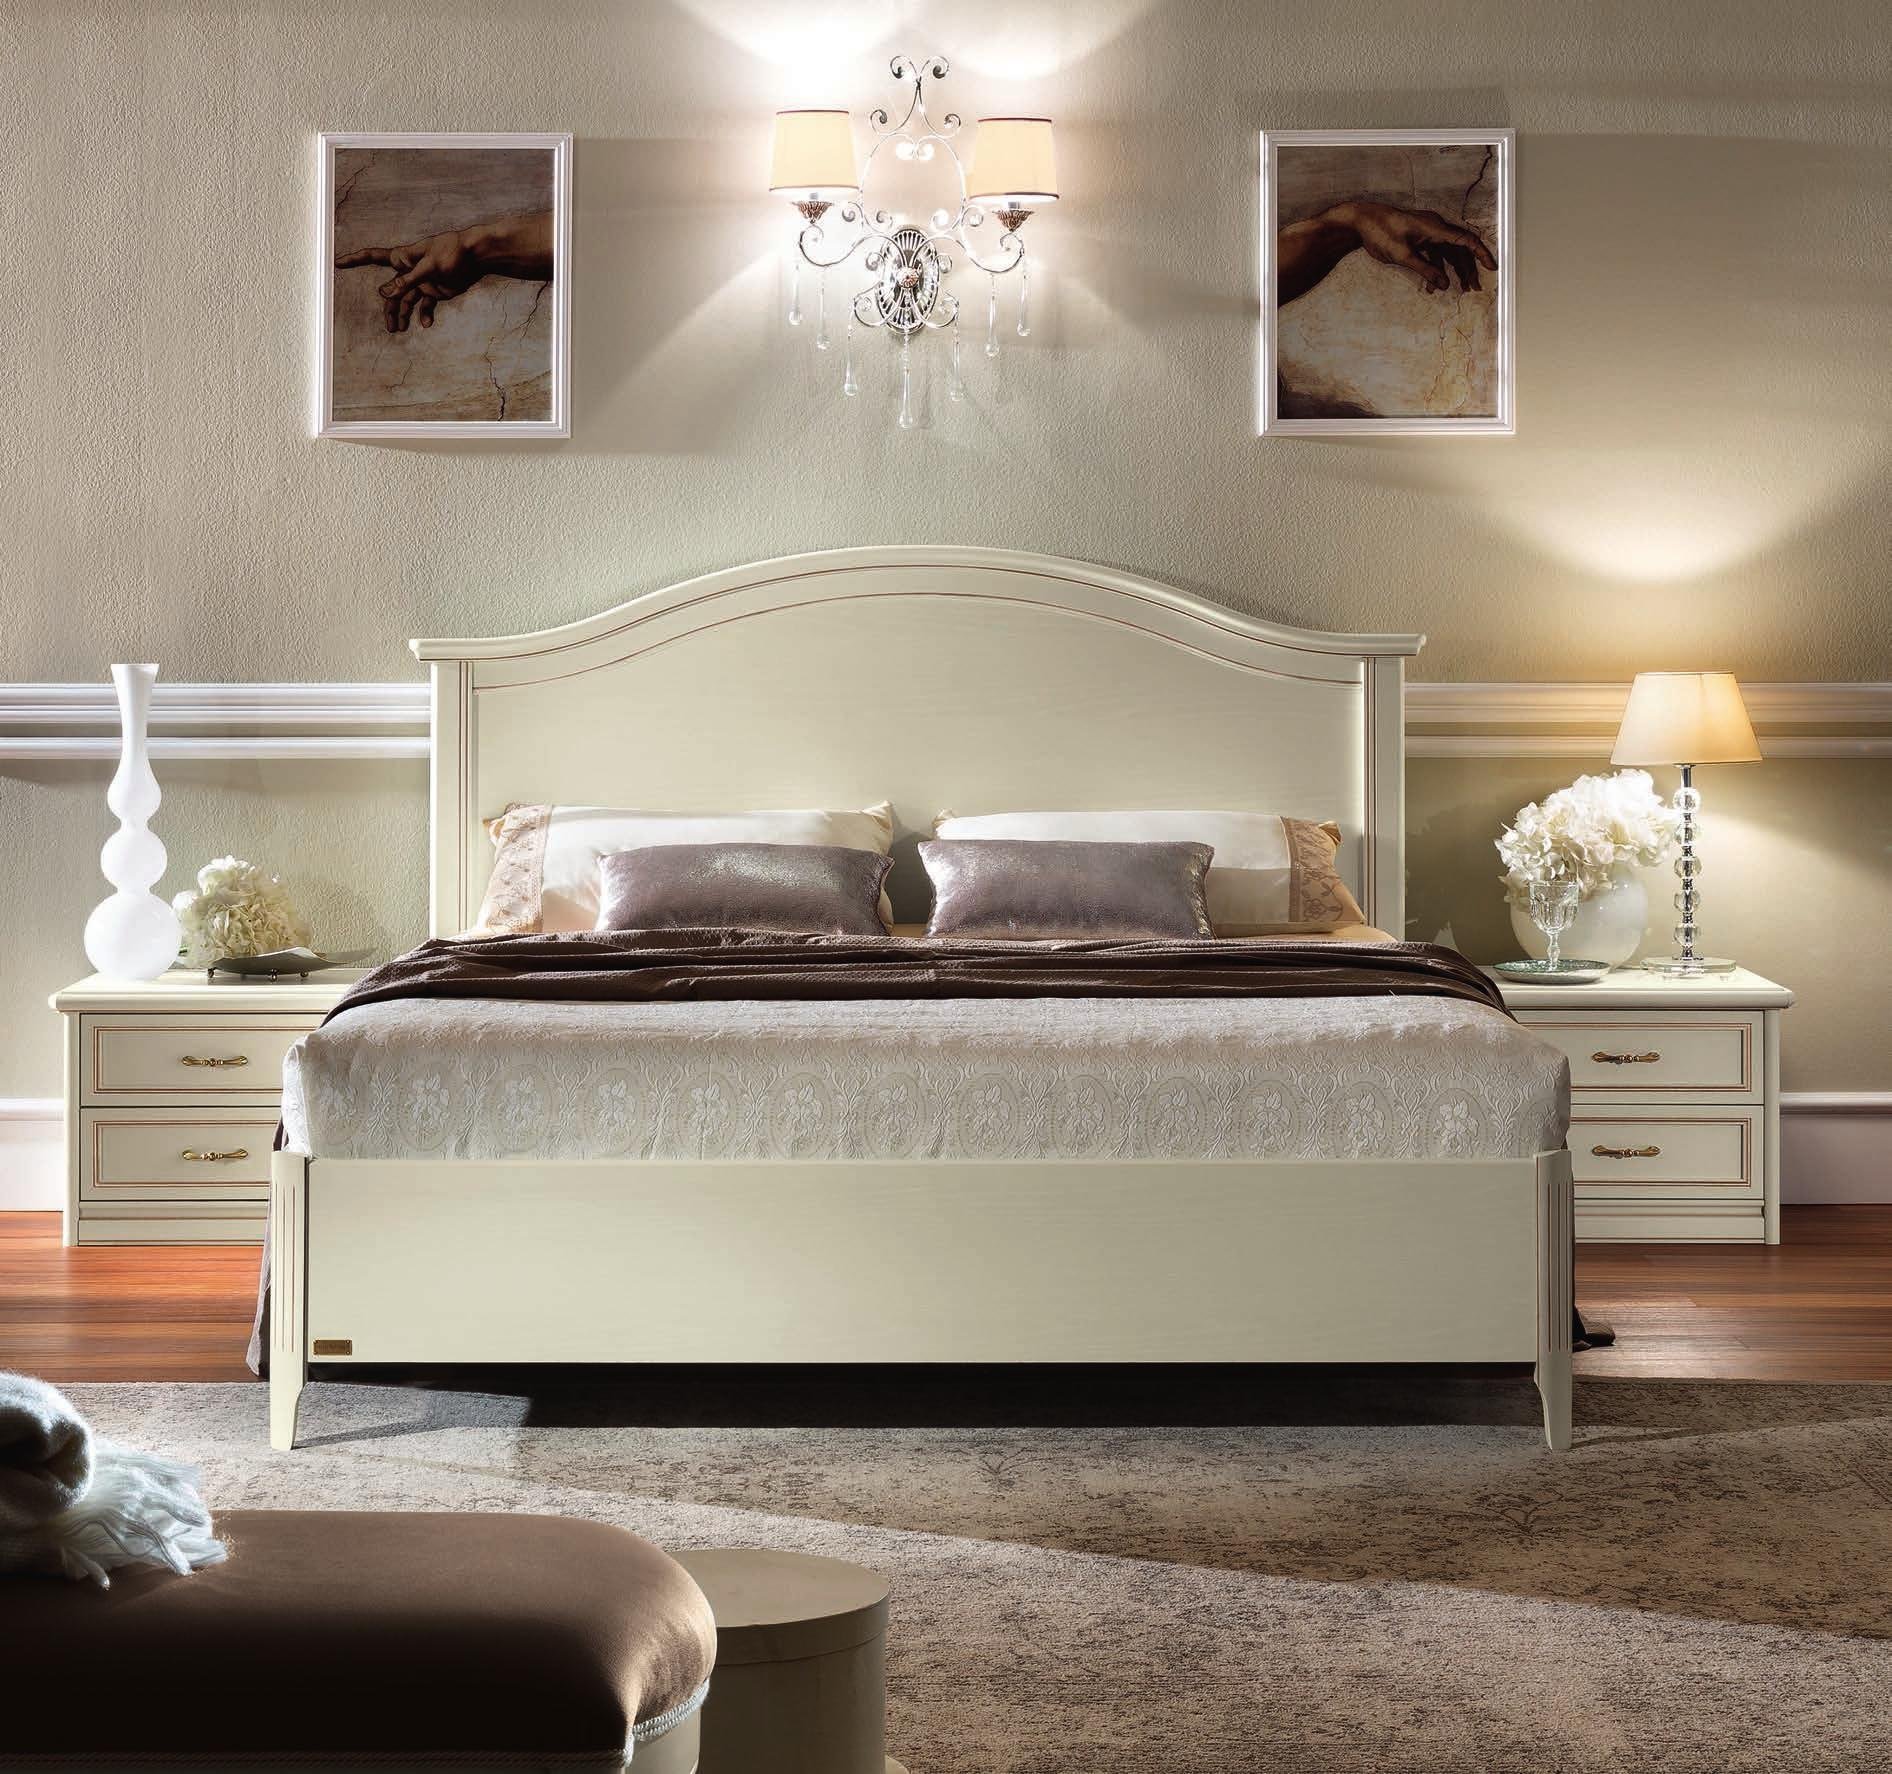 Кровать Nostalgia Ricordi, двуспальная, без изножья, цвет: белый антик, 180x200 см (142LET.13BA)142LET.13BA